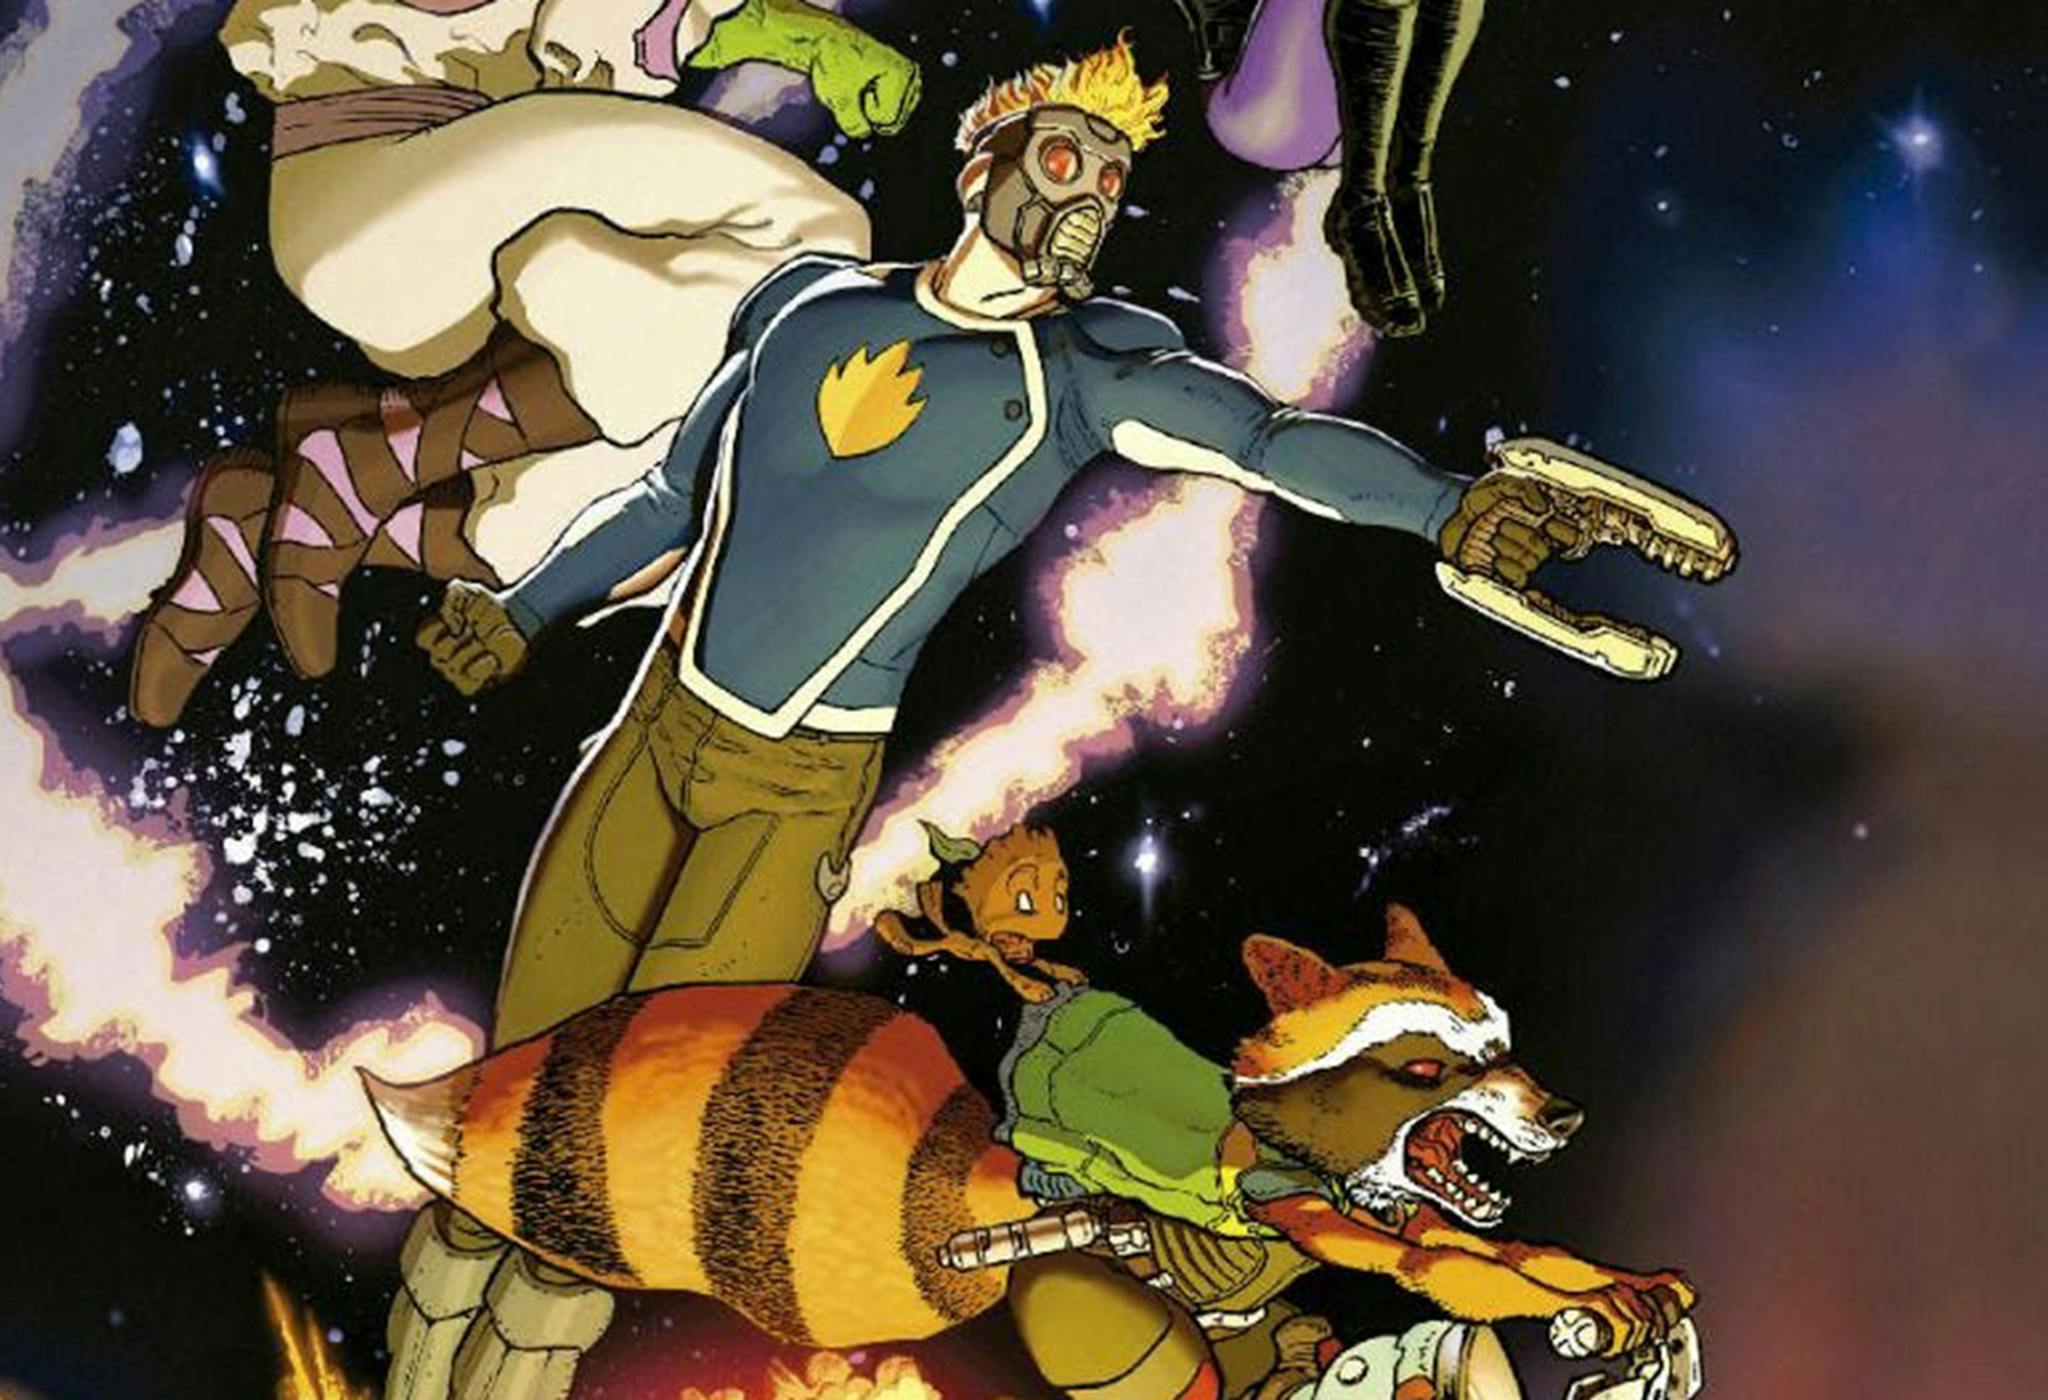 Detalles de la portada del cómic 'Jinetes en el cielo'